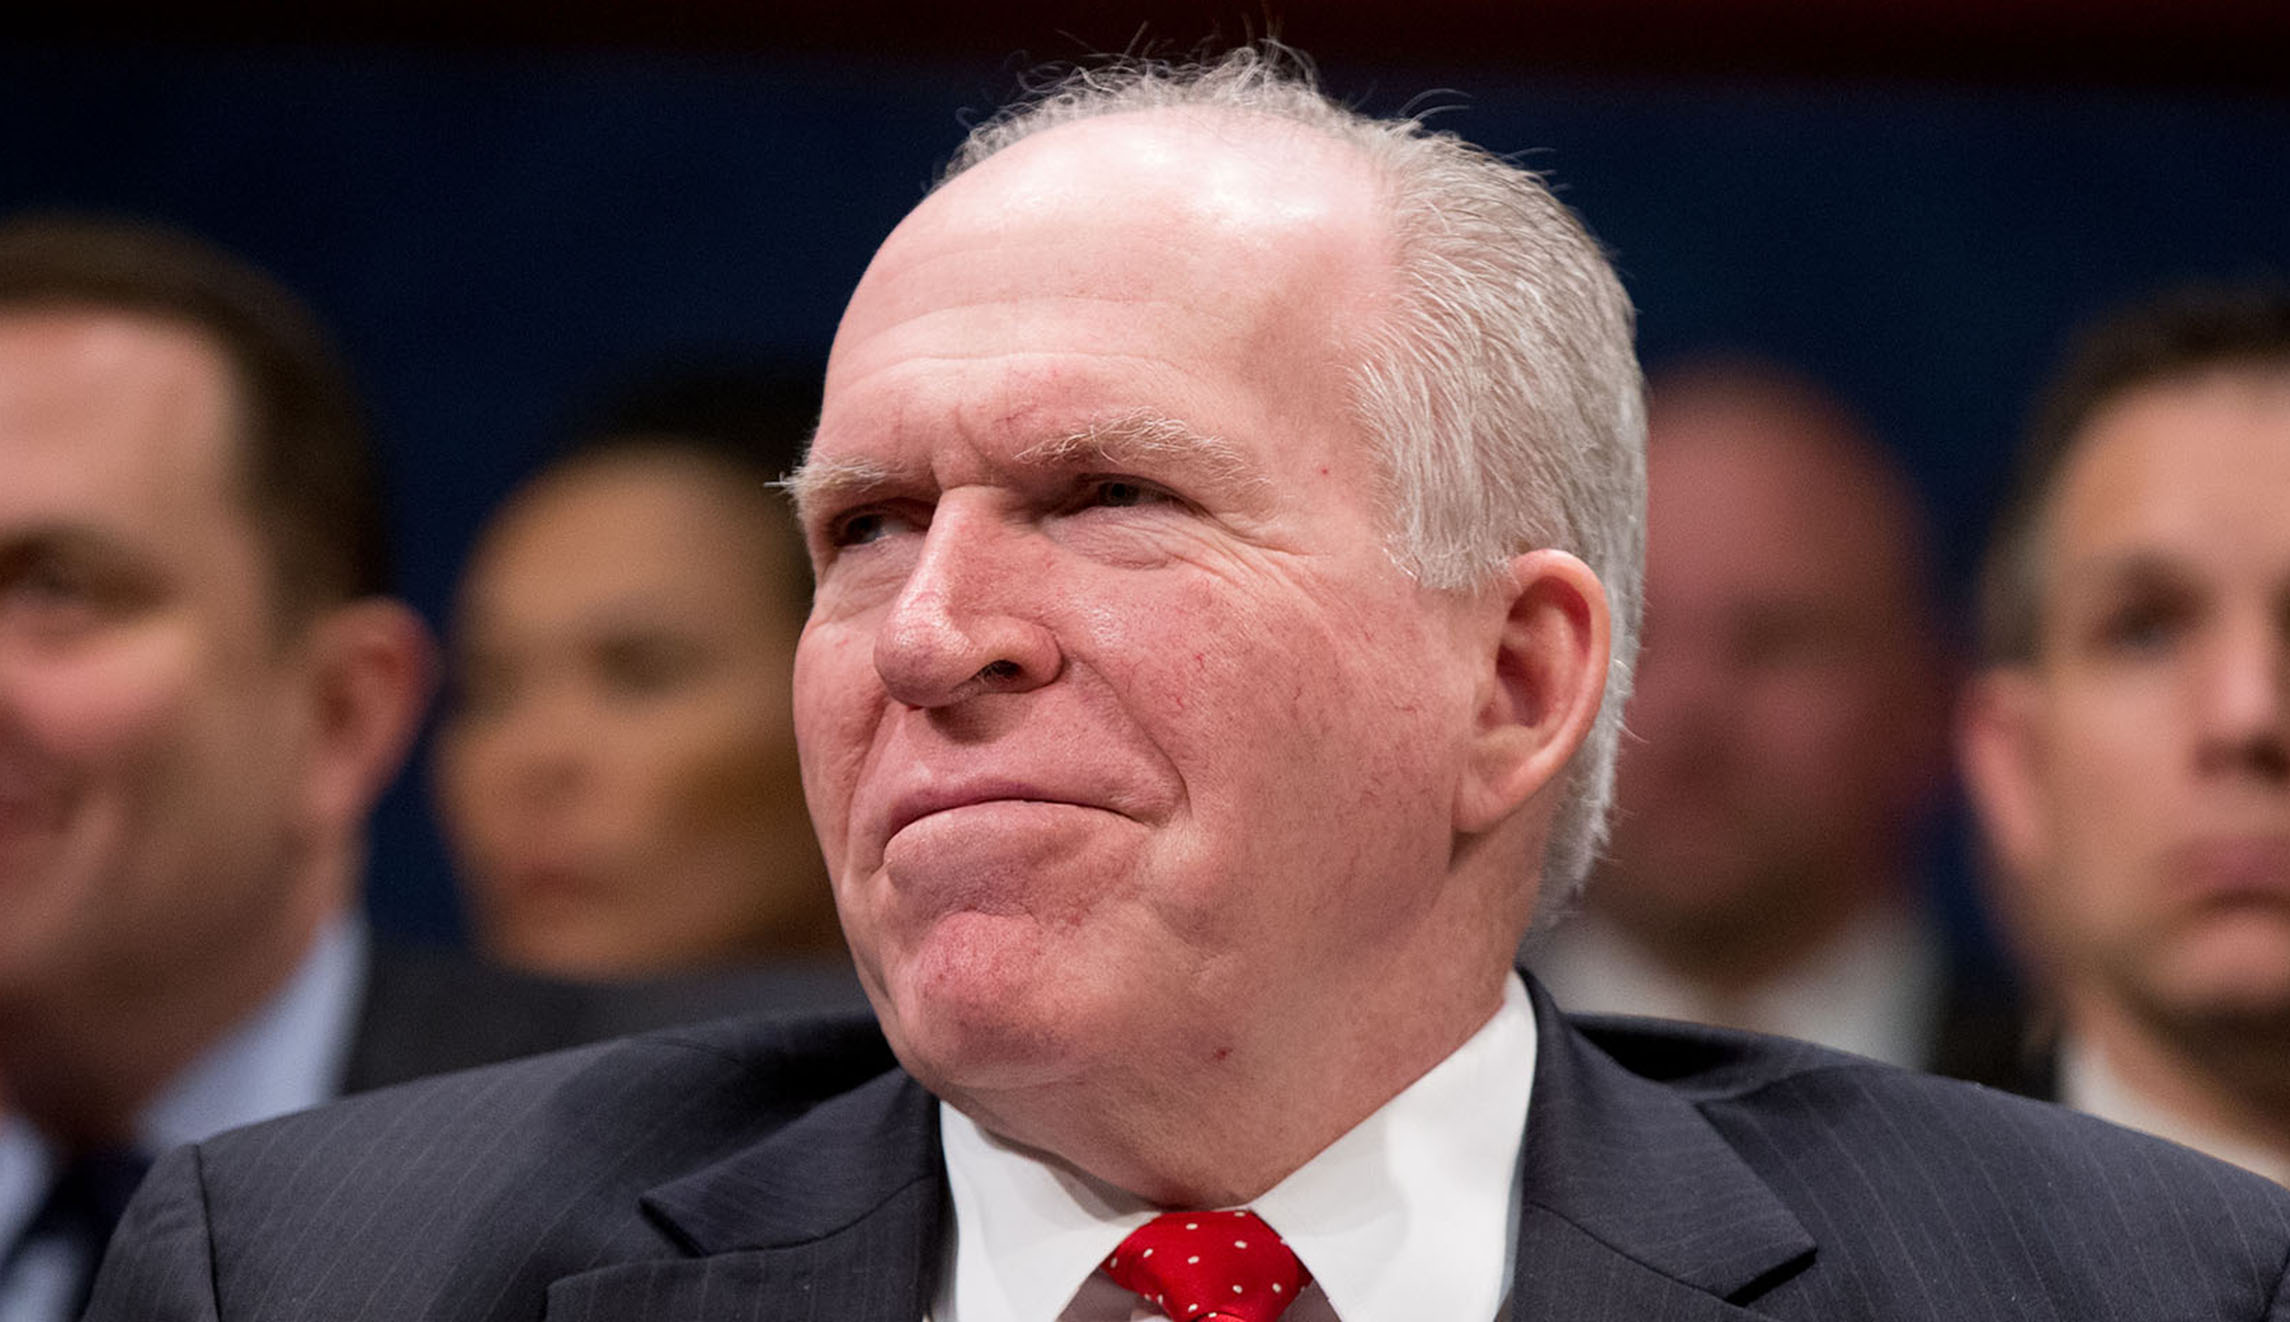 John Brennan warns Trump that his ‘protective cocoon’ is ‘temporary’ - Washington Examiner